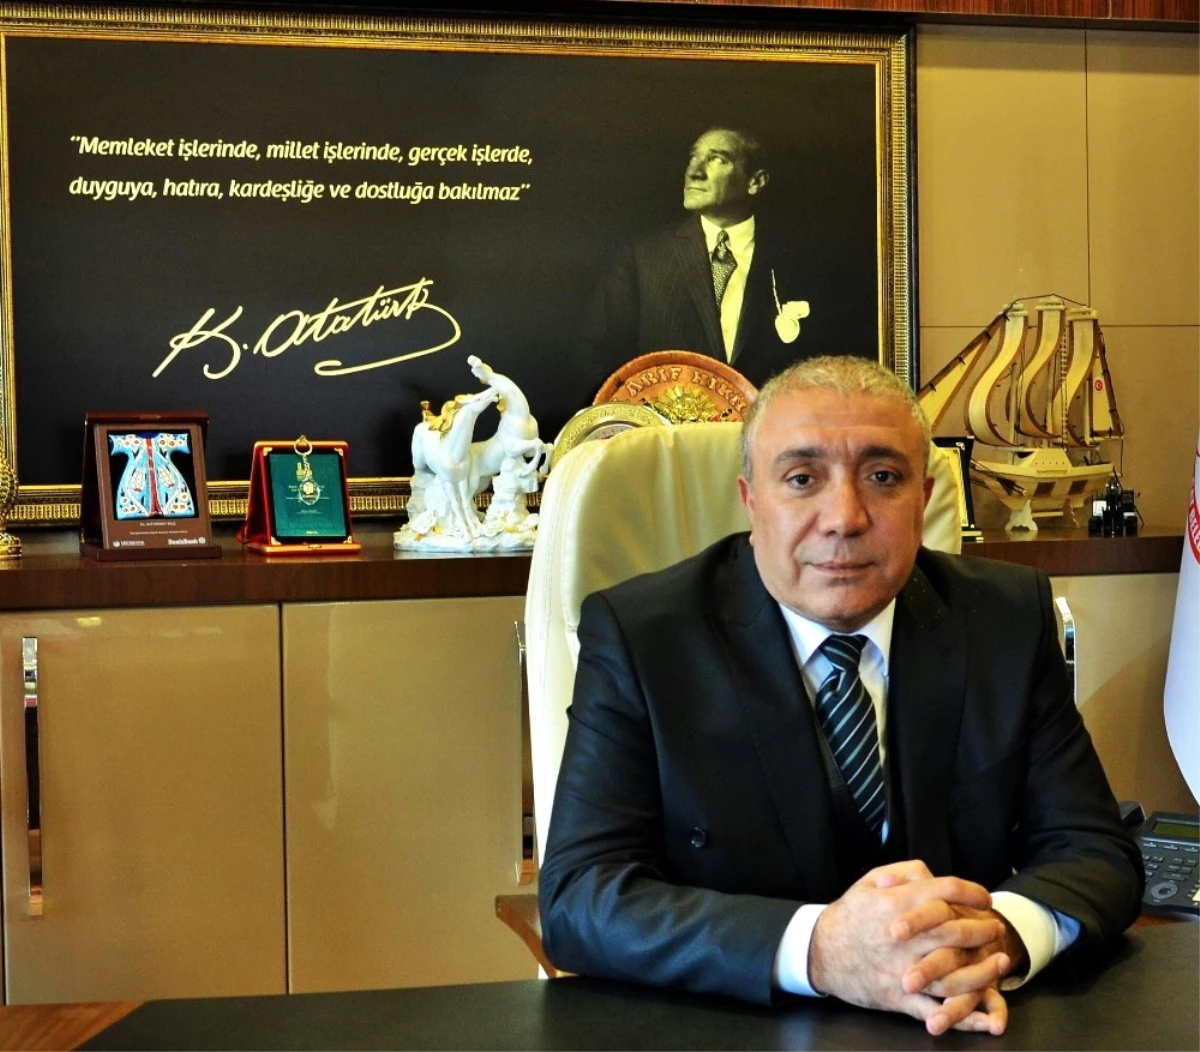 Çat Belediye Başkanı Arif Hikmet Kılıç, Bayram Dolayısıyla Bir Kutlama Mesajı Yayınladı.